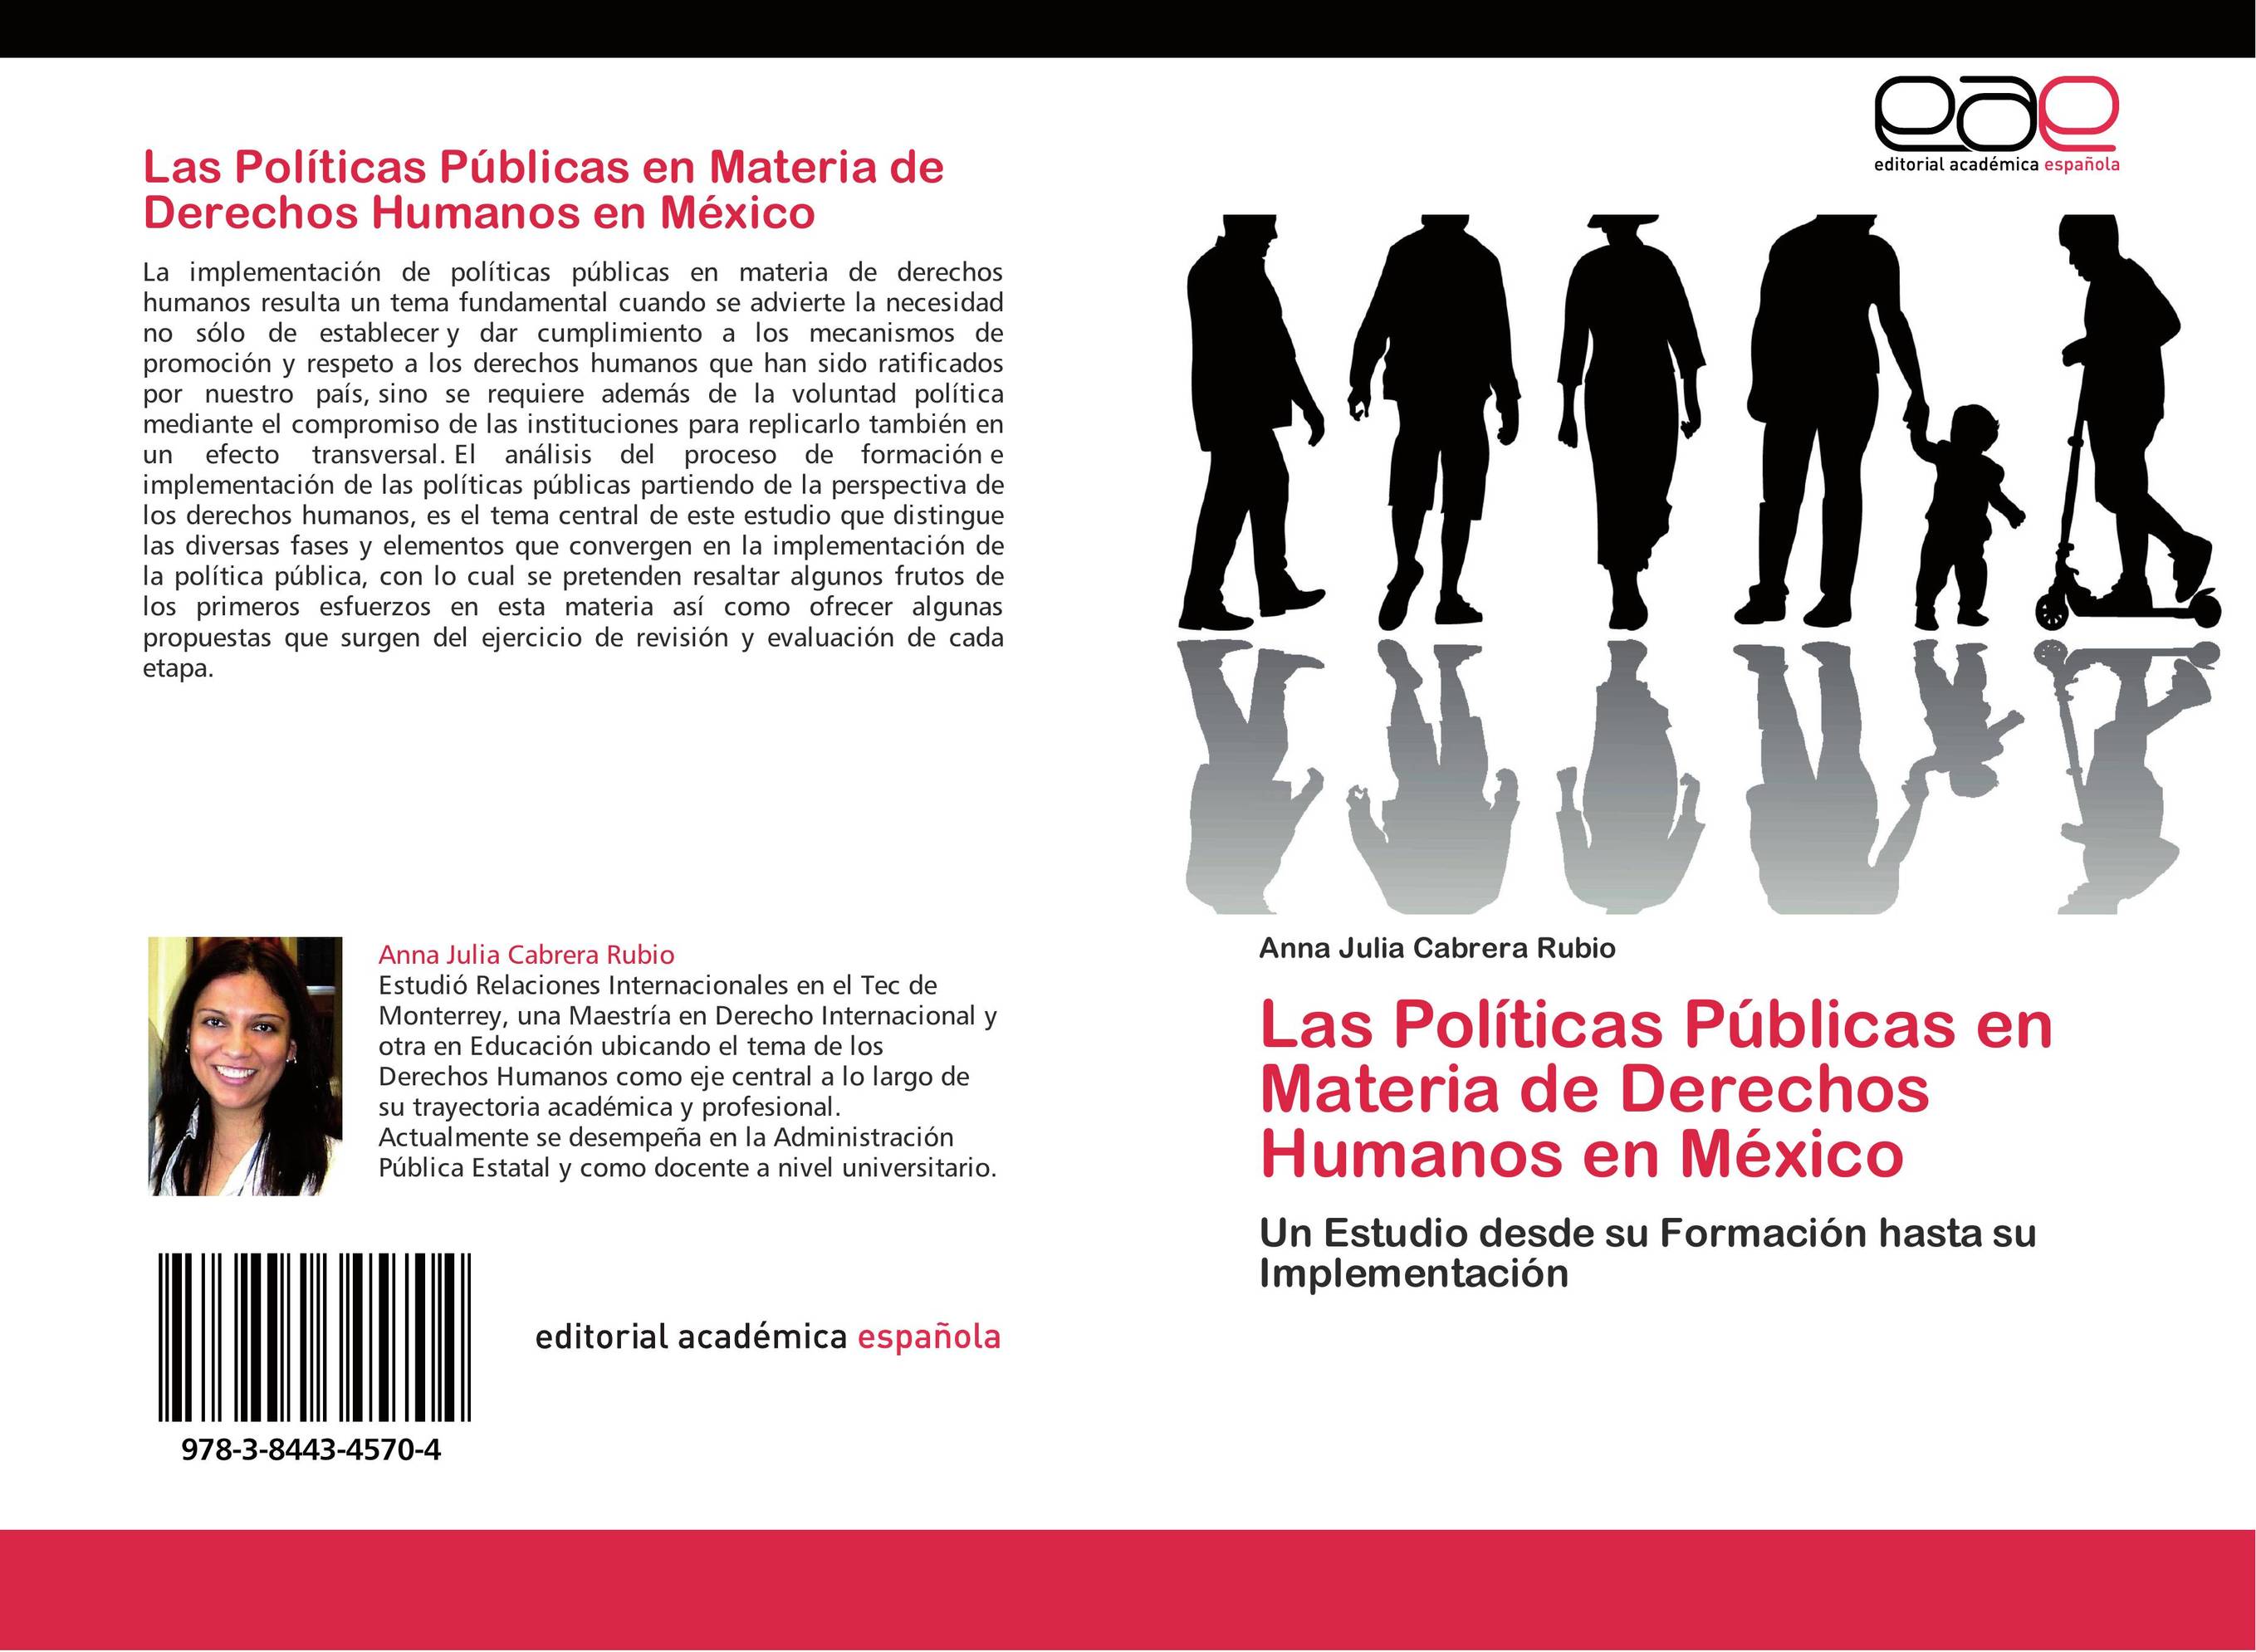 Las Políticas Públicas en Materia de Derechos Humanos en México